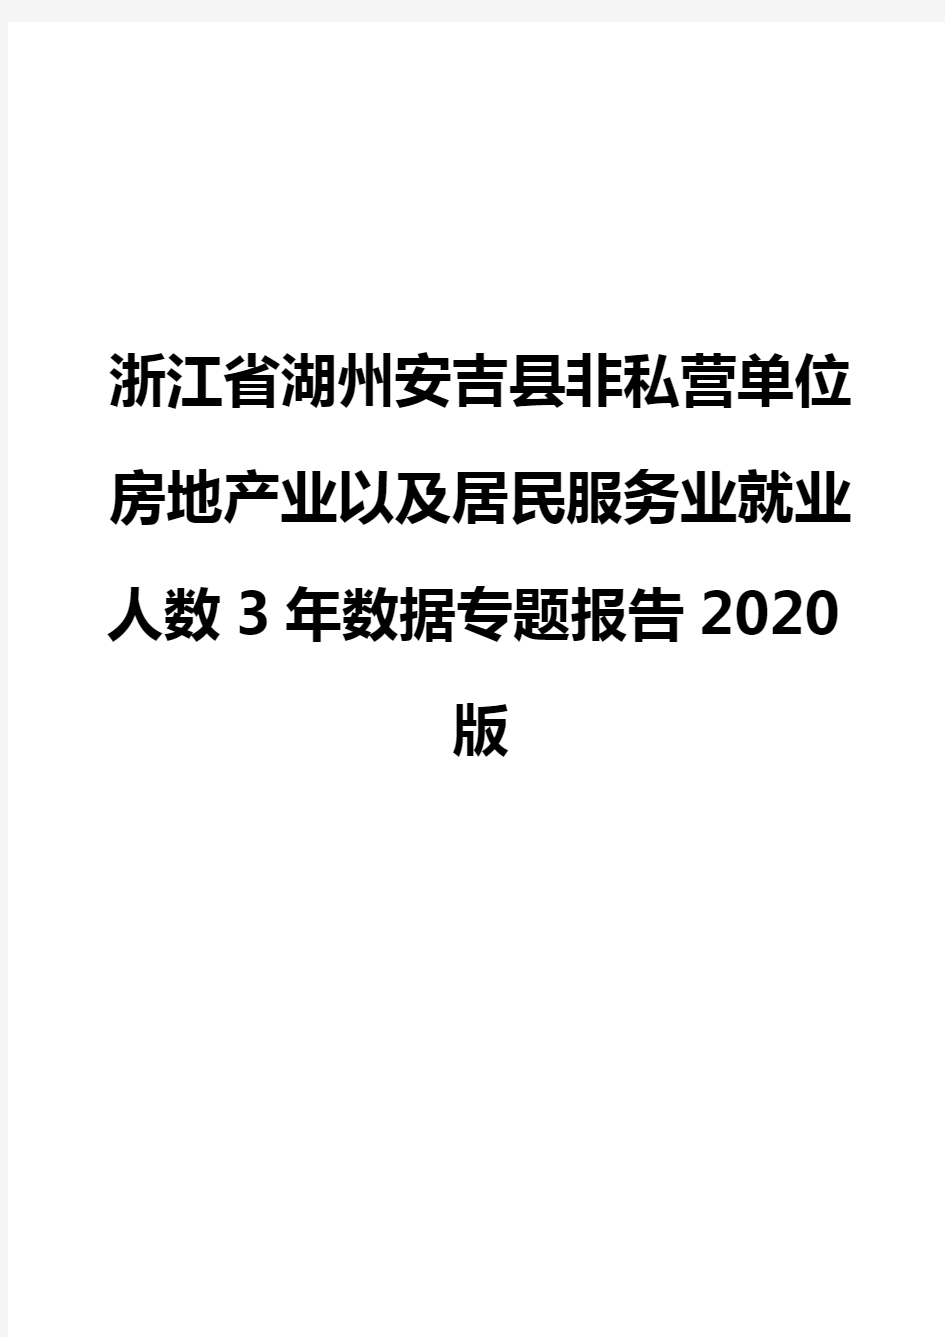 浙江省湖州安吉县非私营单位房地产业以及居民服务业就业人数3年数据专题报告2020版